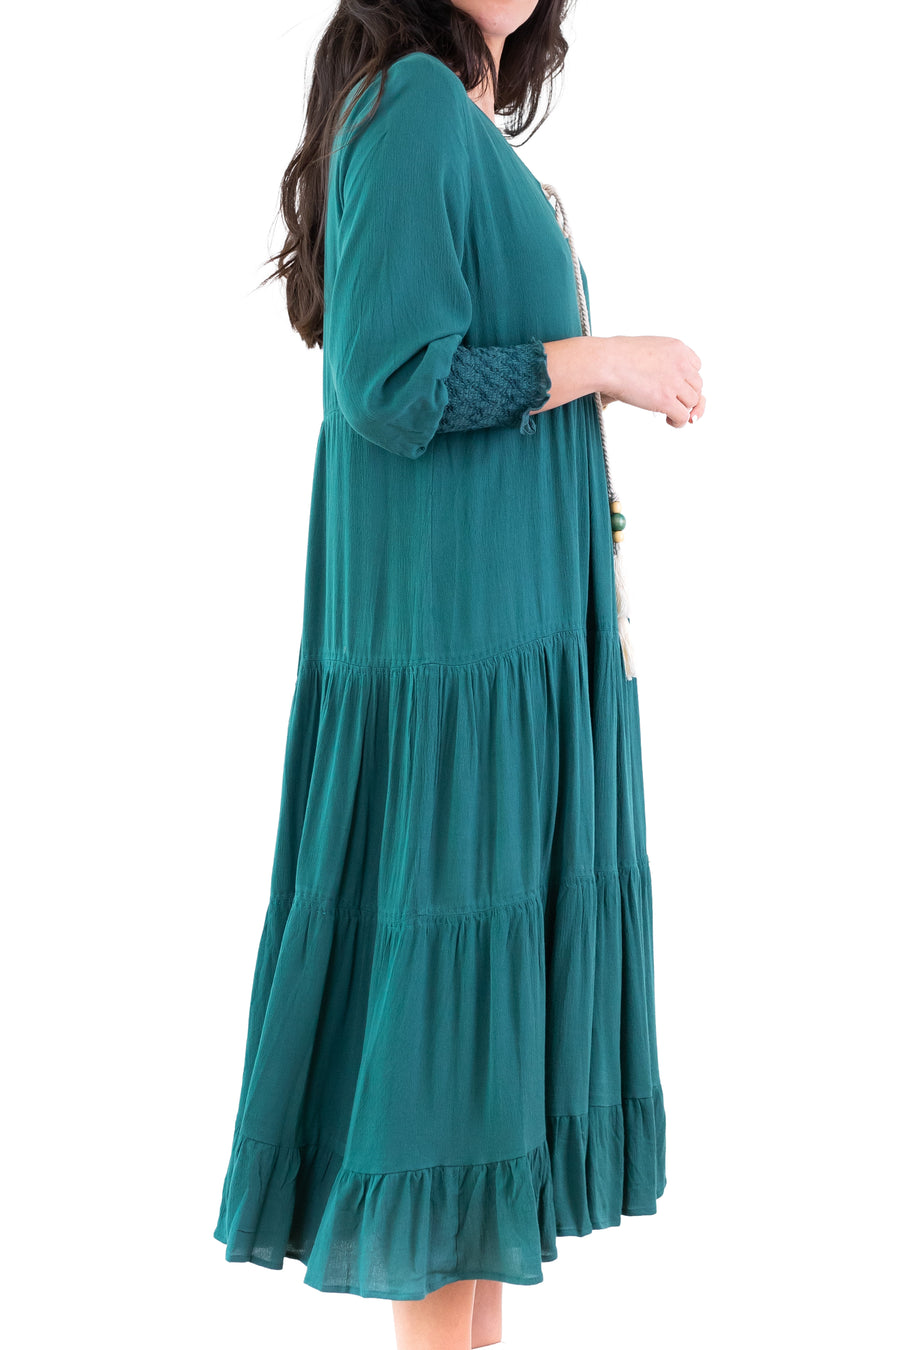 ISLA DRESS (Green)- FINAL SALE